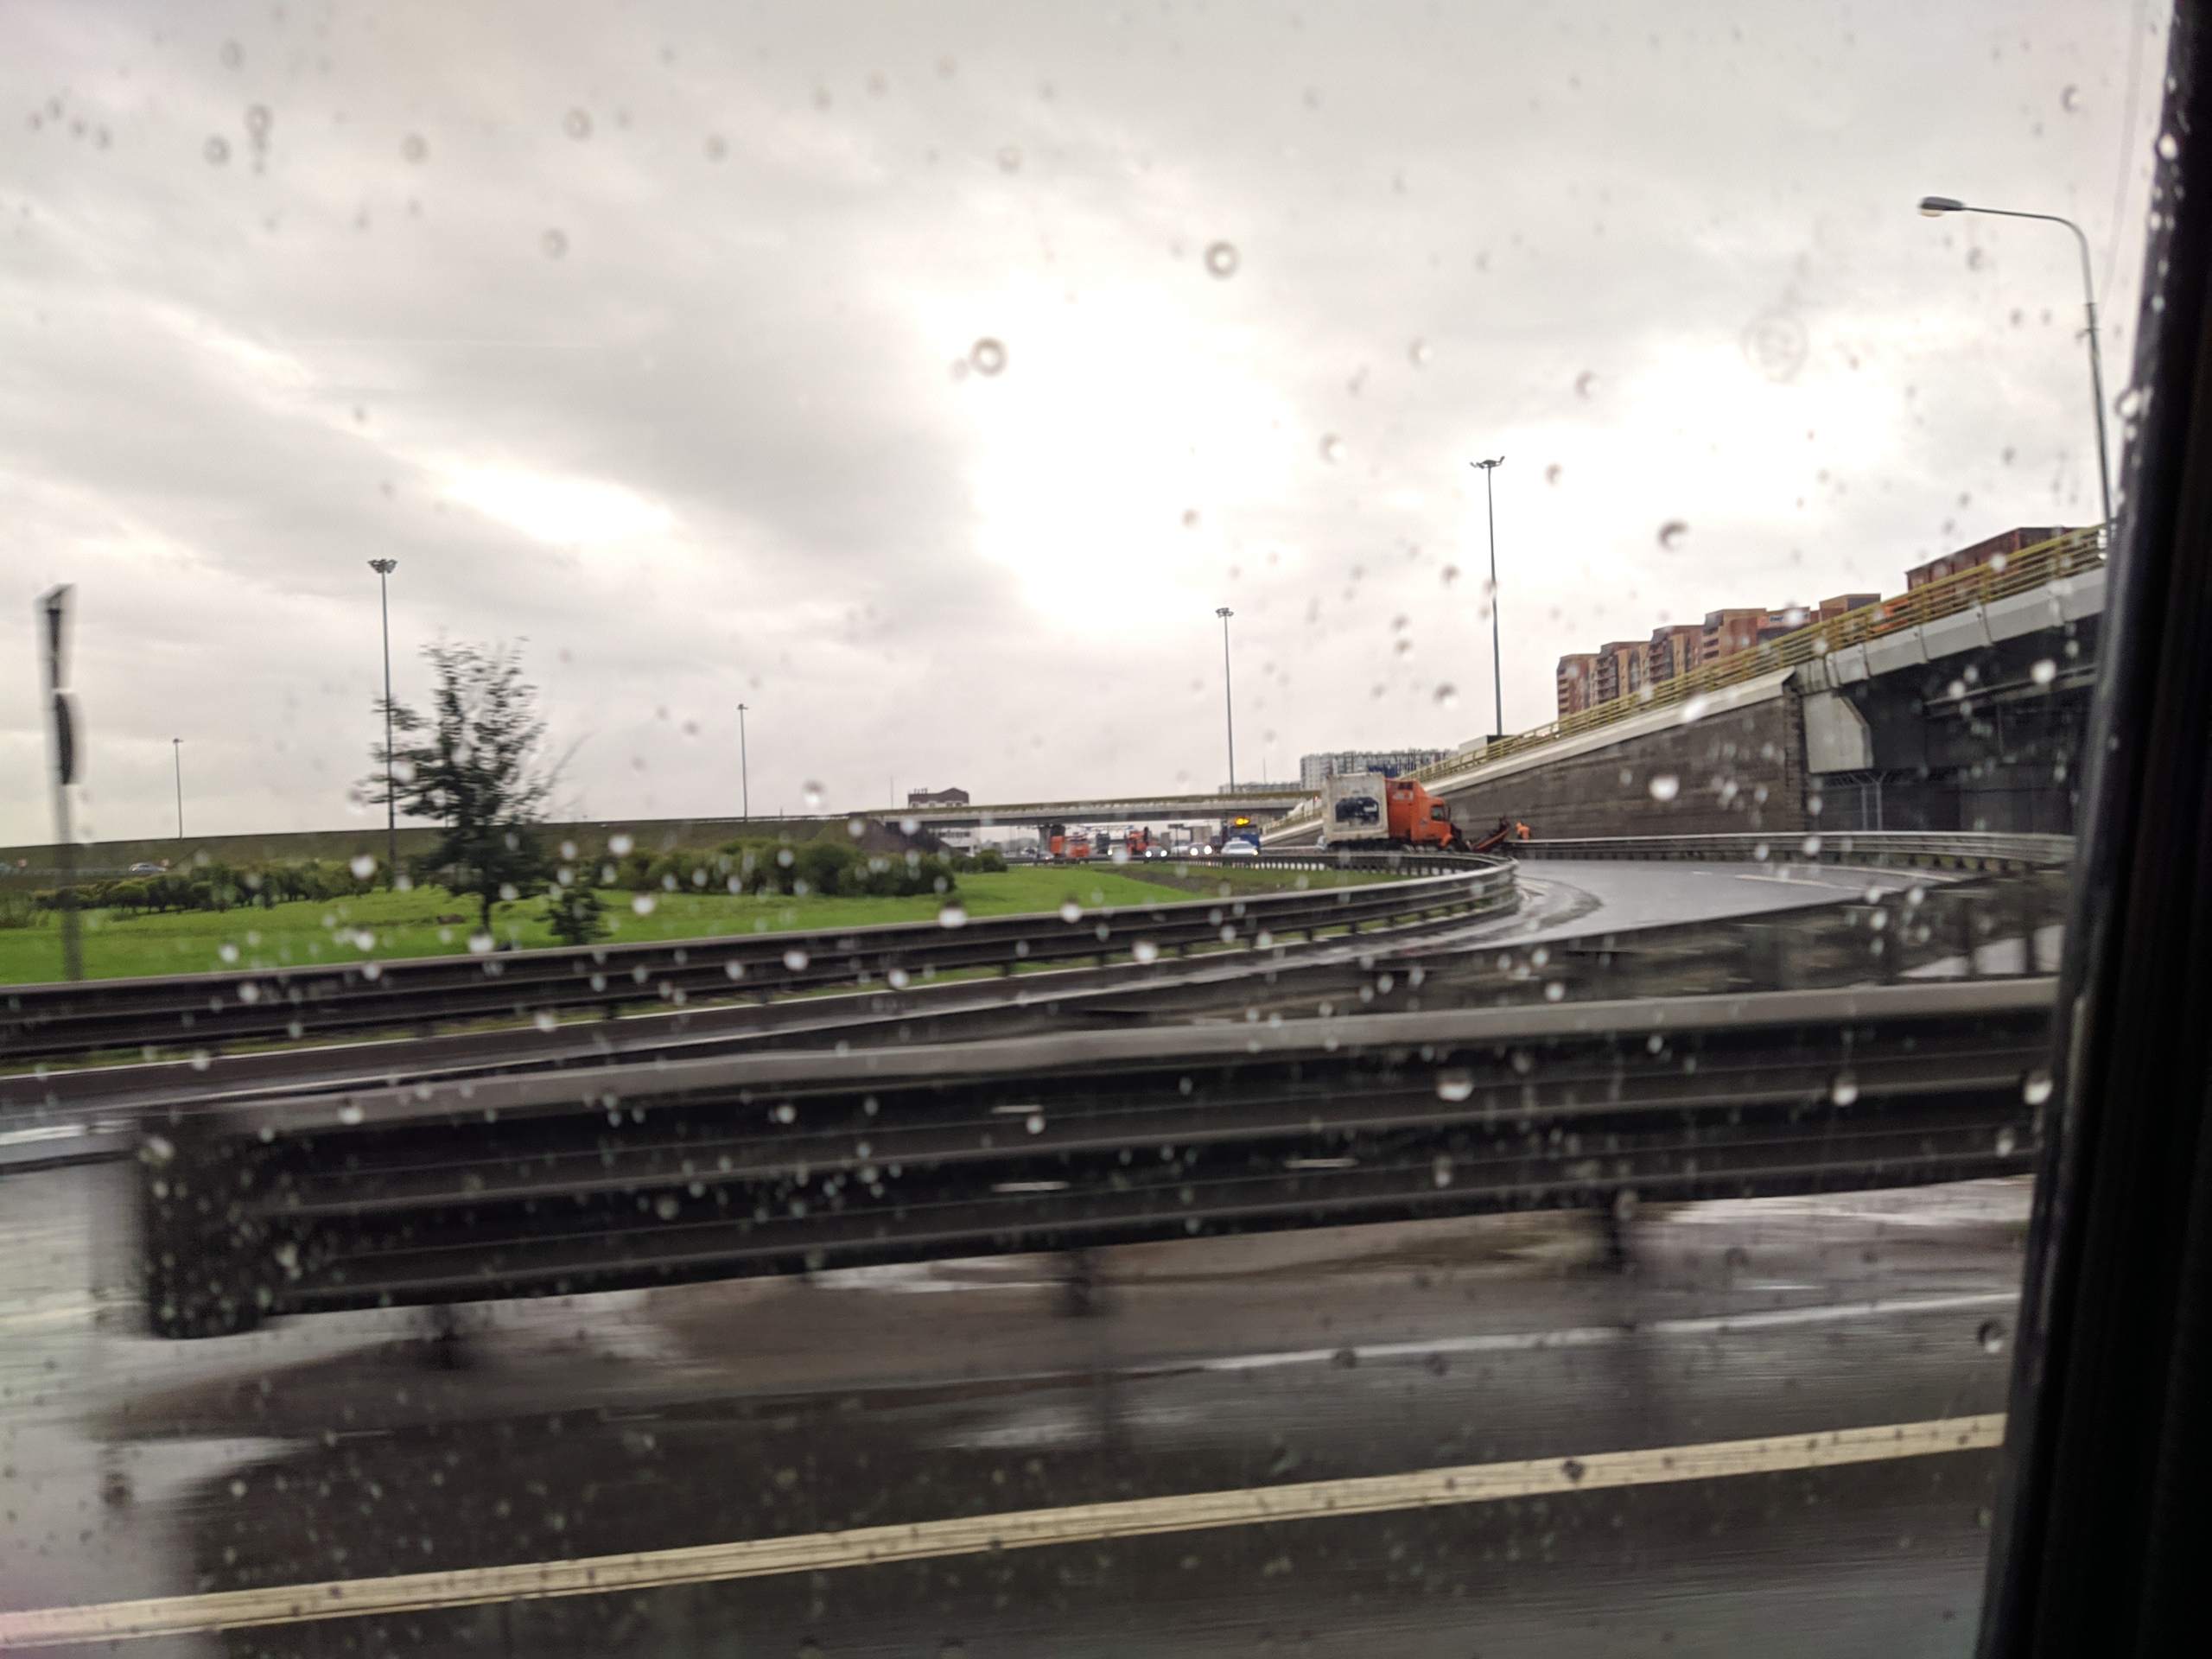 ДТП с фурой полностью перекрыло съезд с КАД на Таллинское шоссе. Ждут спецтехнику